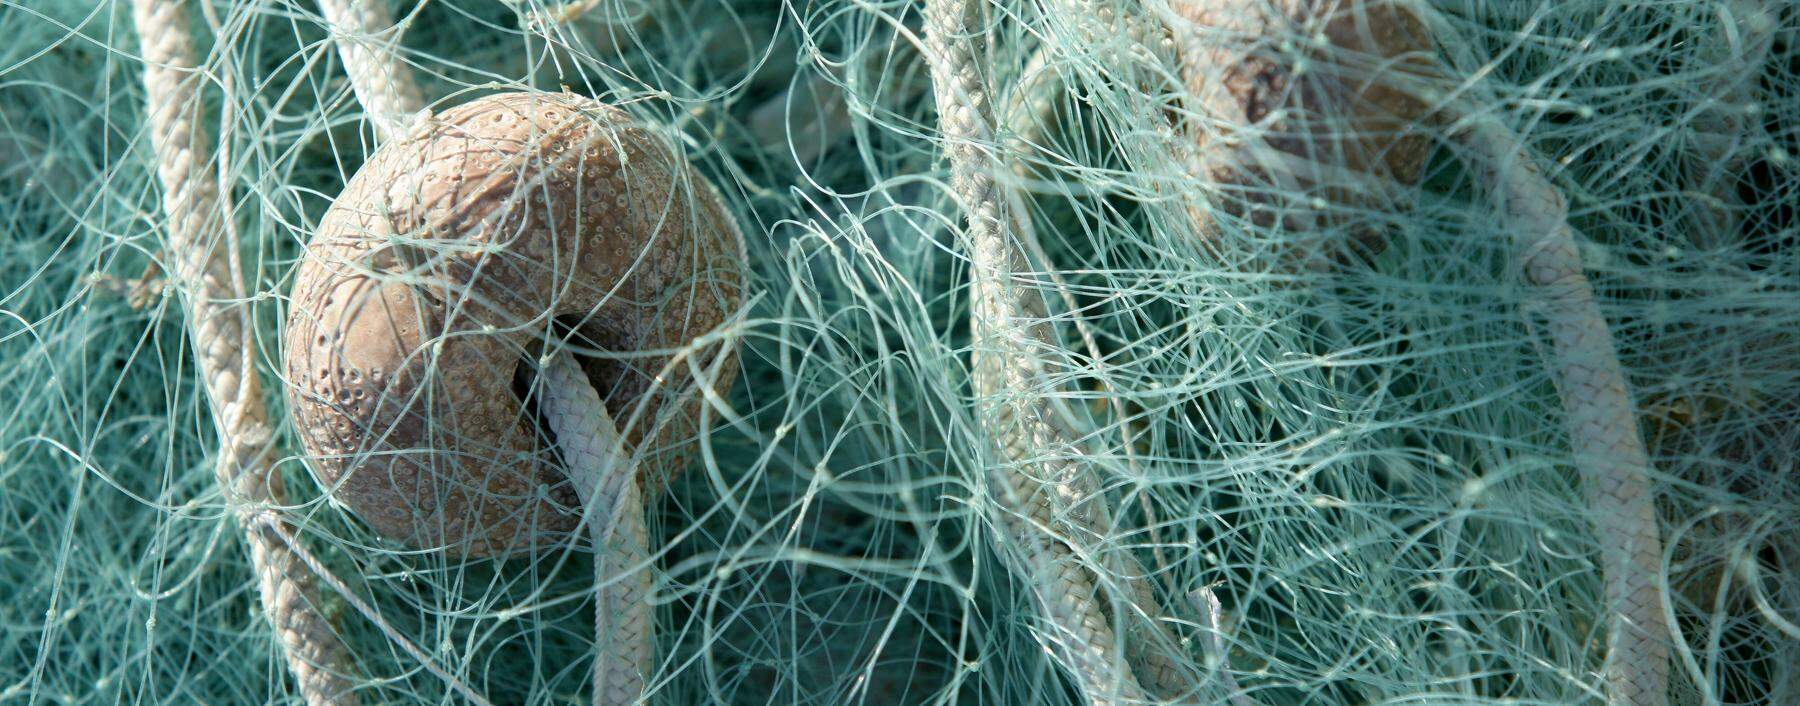 Fischernetze sind für knapp die Hälfte des Plastikmülls im Meer verantwortlich. 